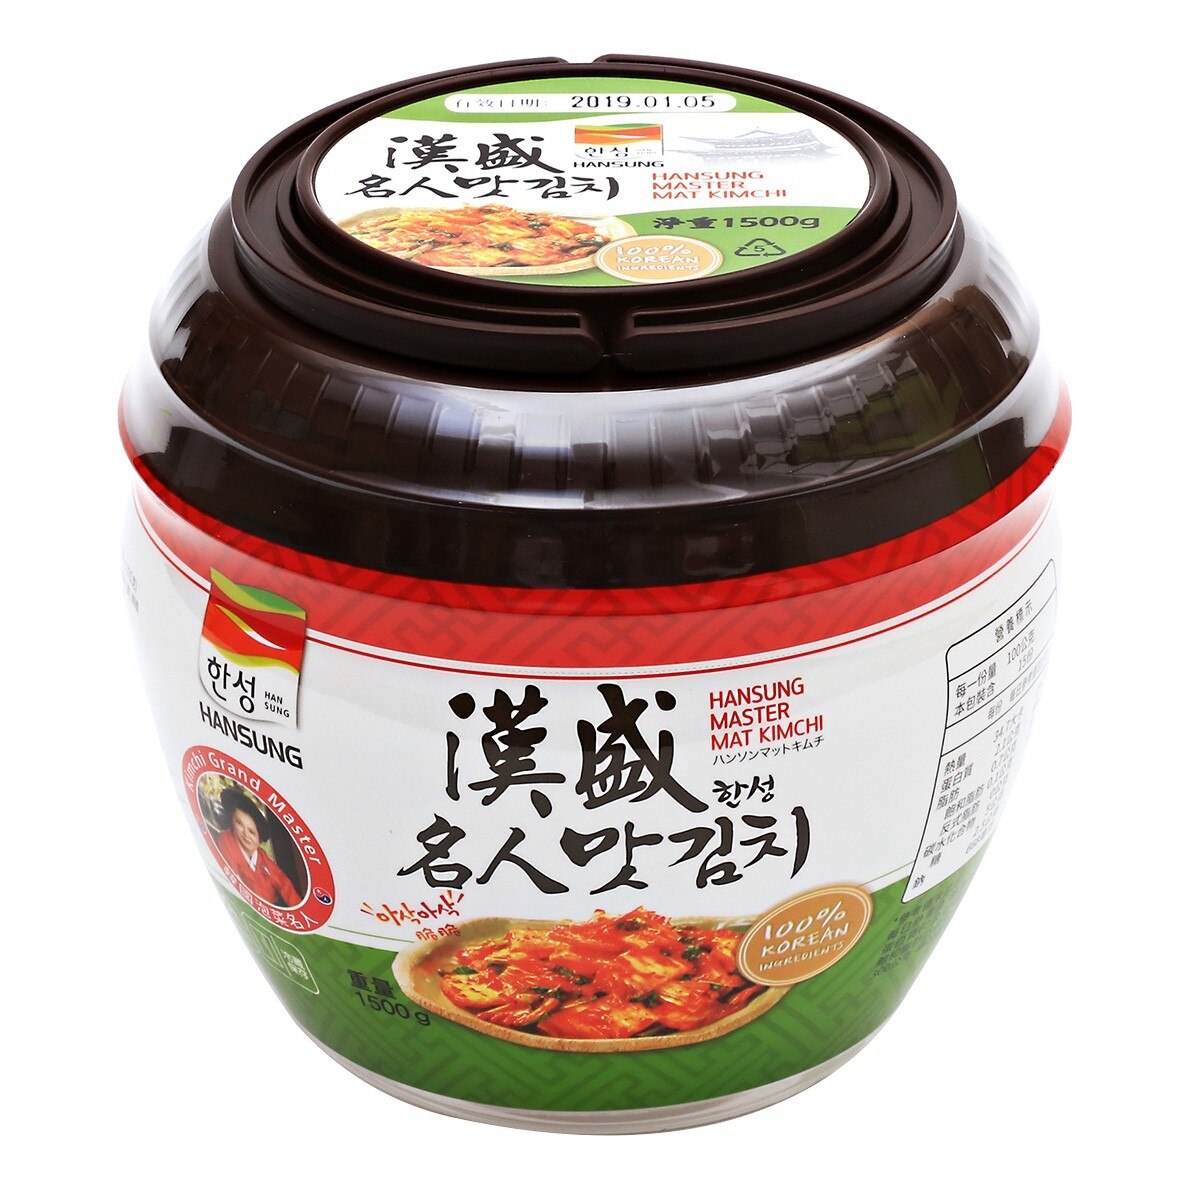 漢盛 泡菜切片罐裝 1.5公斤 X 6罐 僅配送至高雄市部分區域